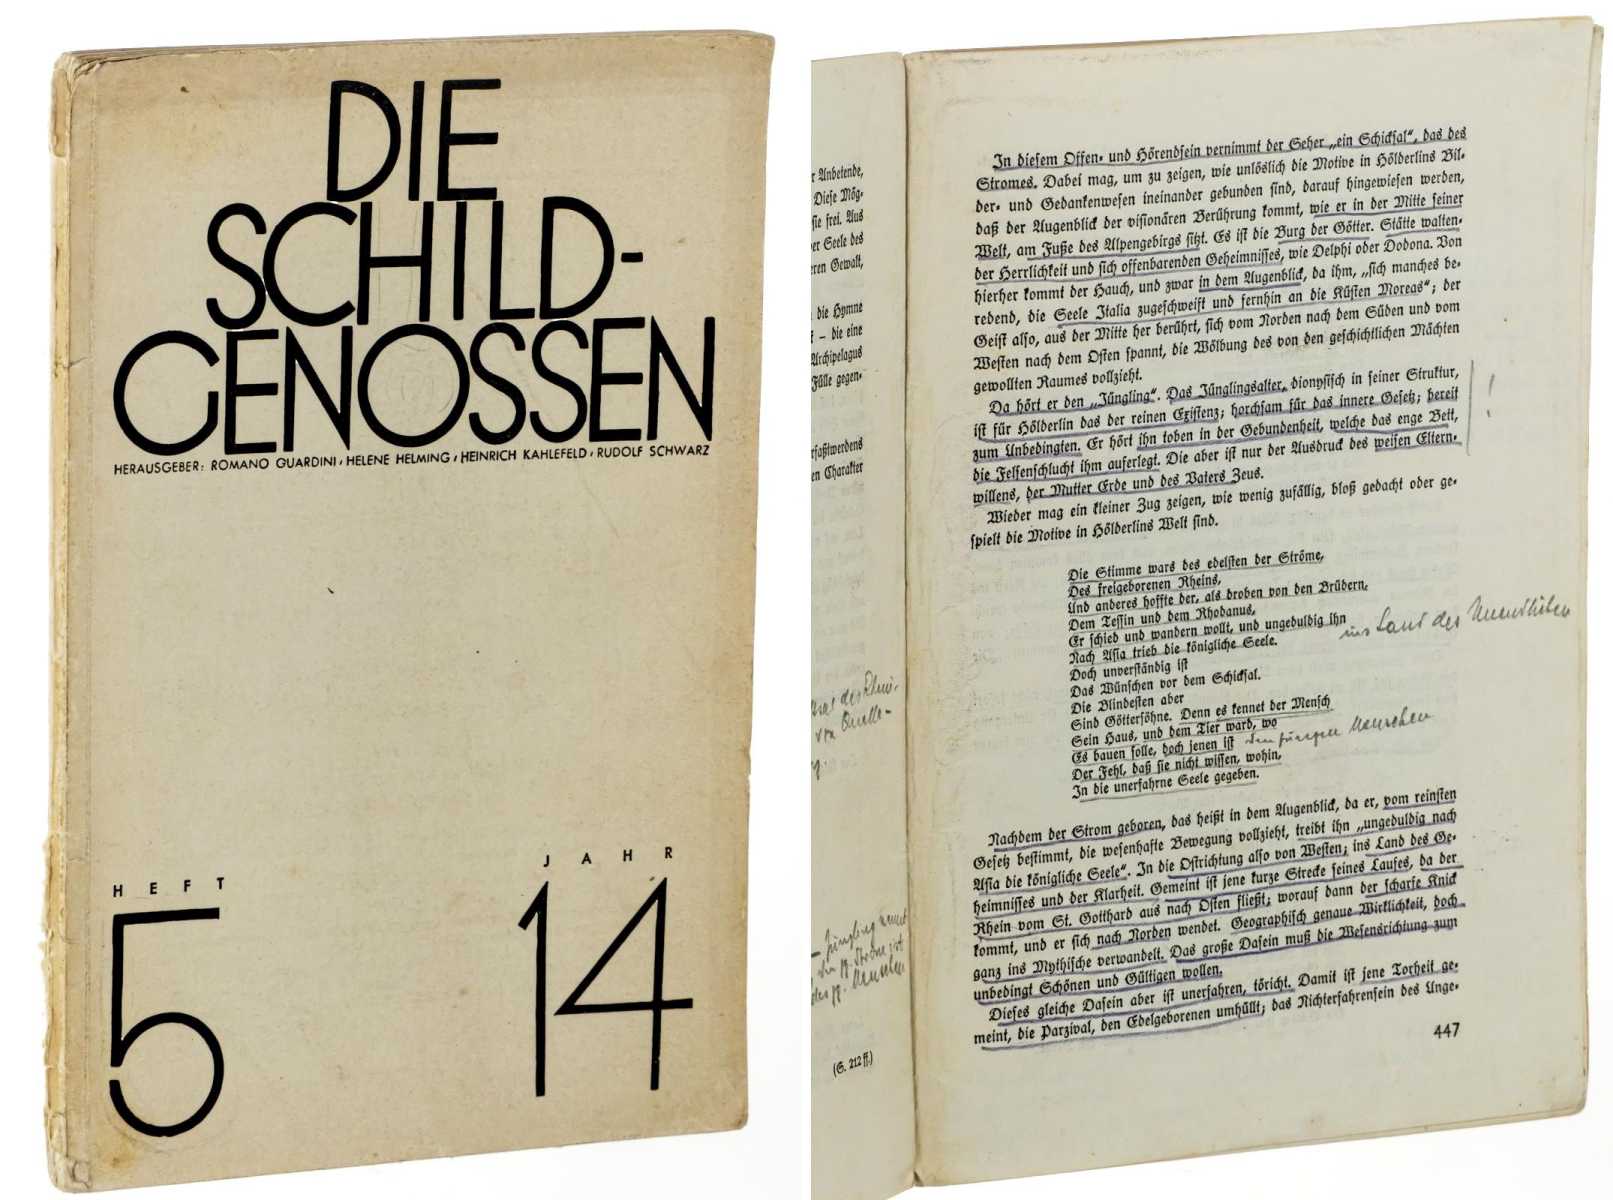   Die Schildgenossen. Katholische Zweimonatsschrift, herausgegeben v. Romano Guardini, Helene Helming, Heinrich Kahlefeld, Rudolf Schwarz. 